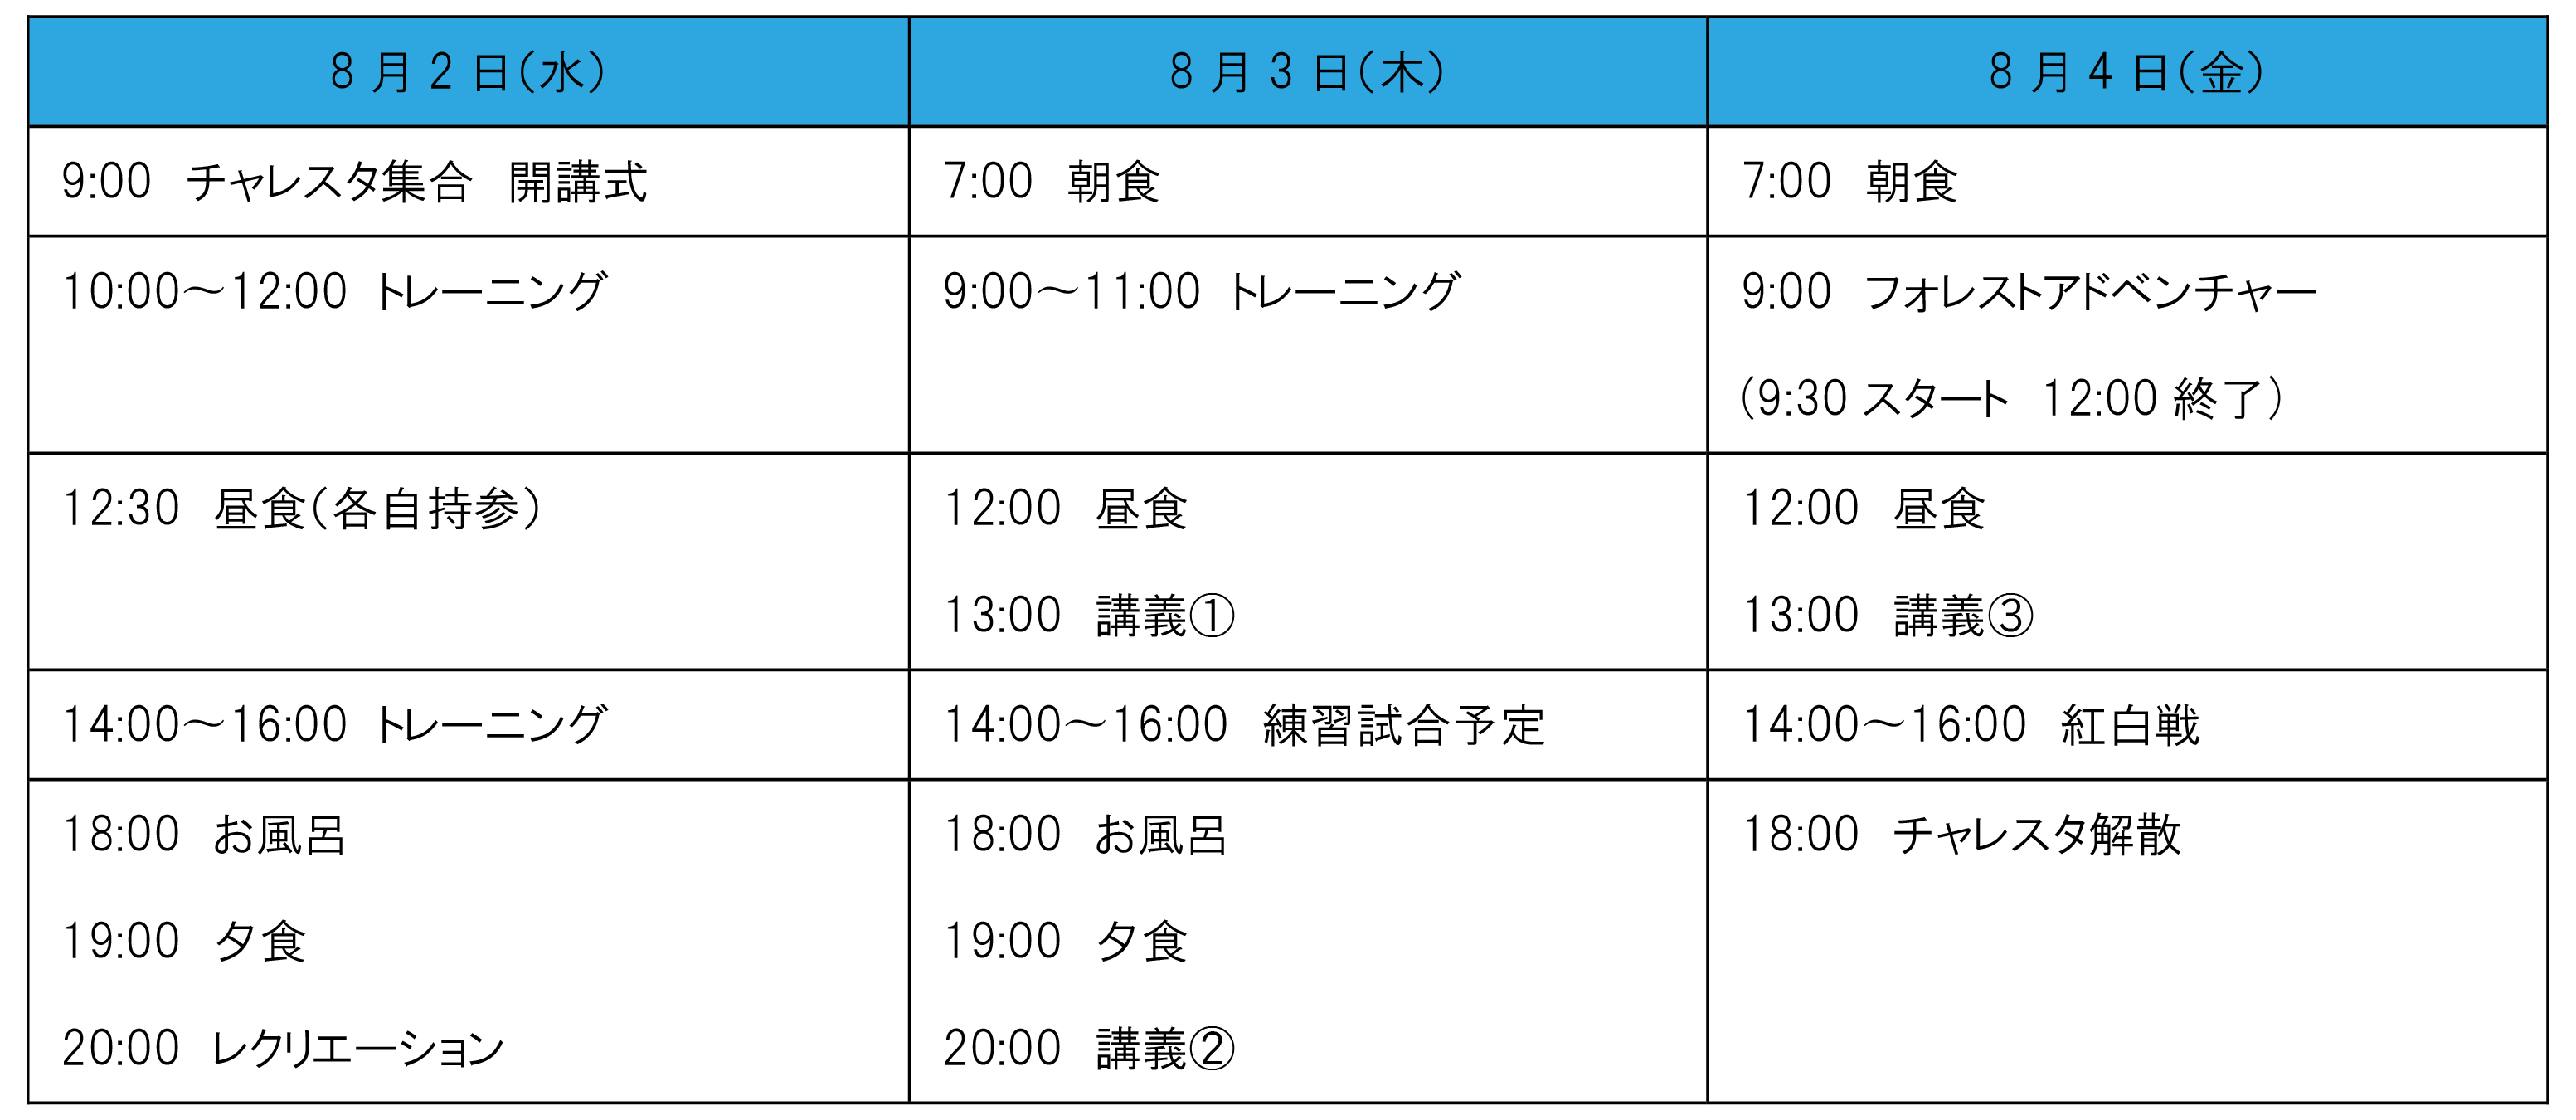 schedule-01